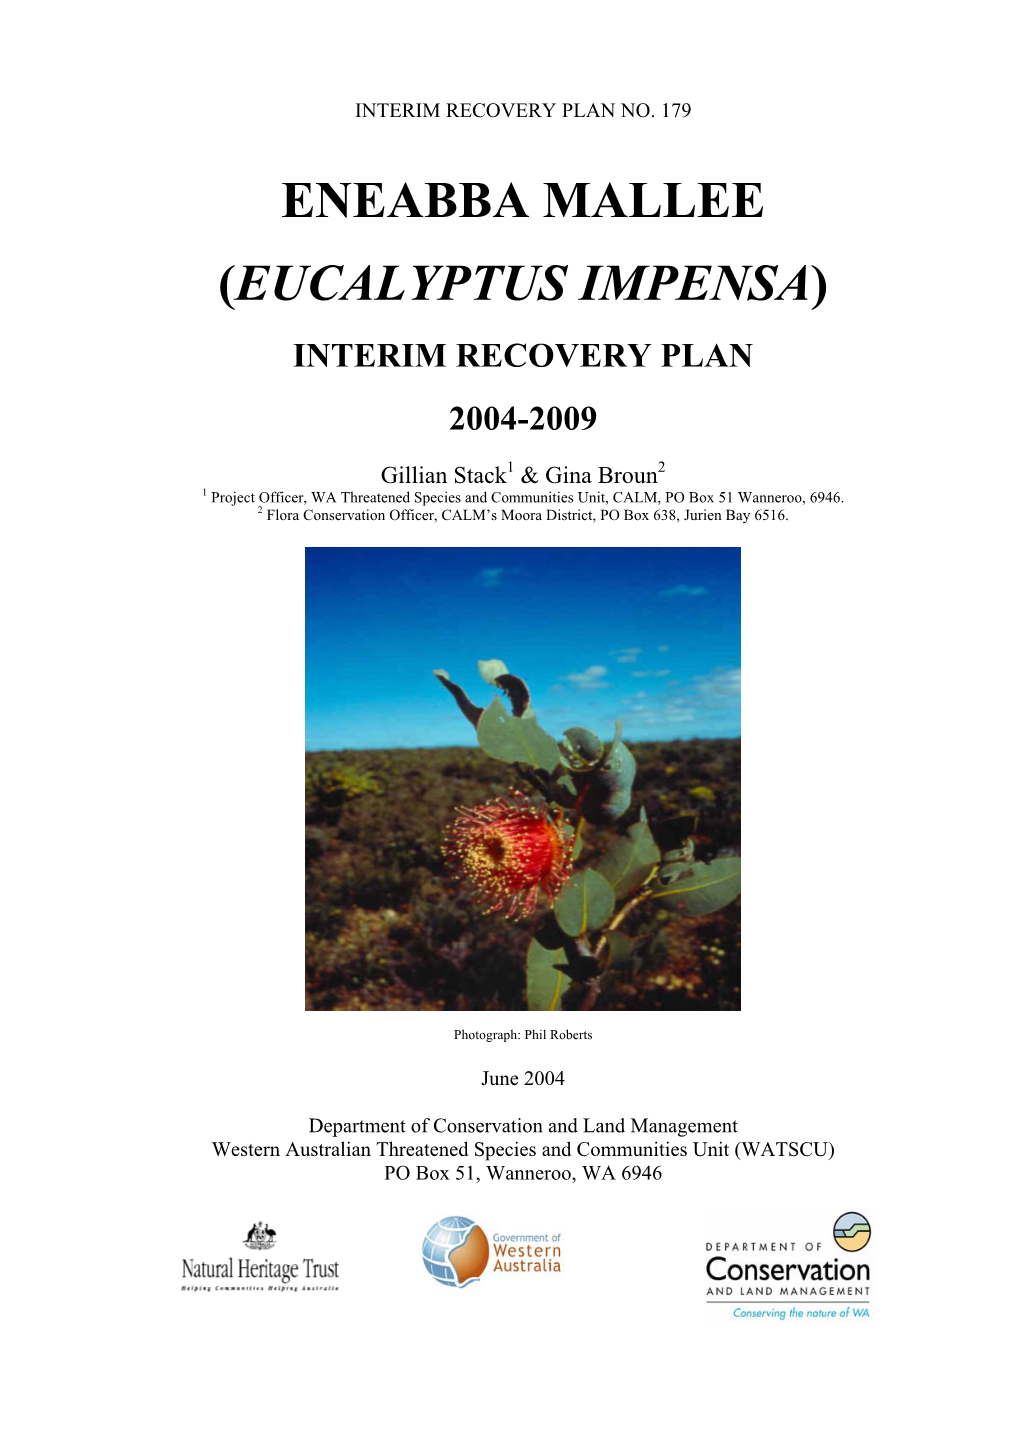 (Eucalyptus Impensa) Interim Recovery